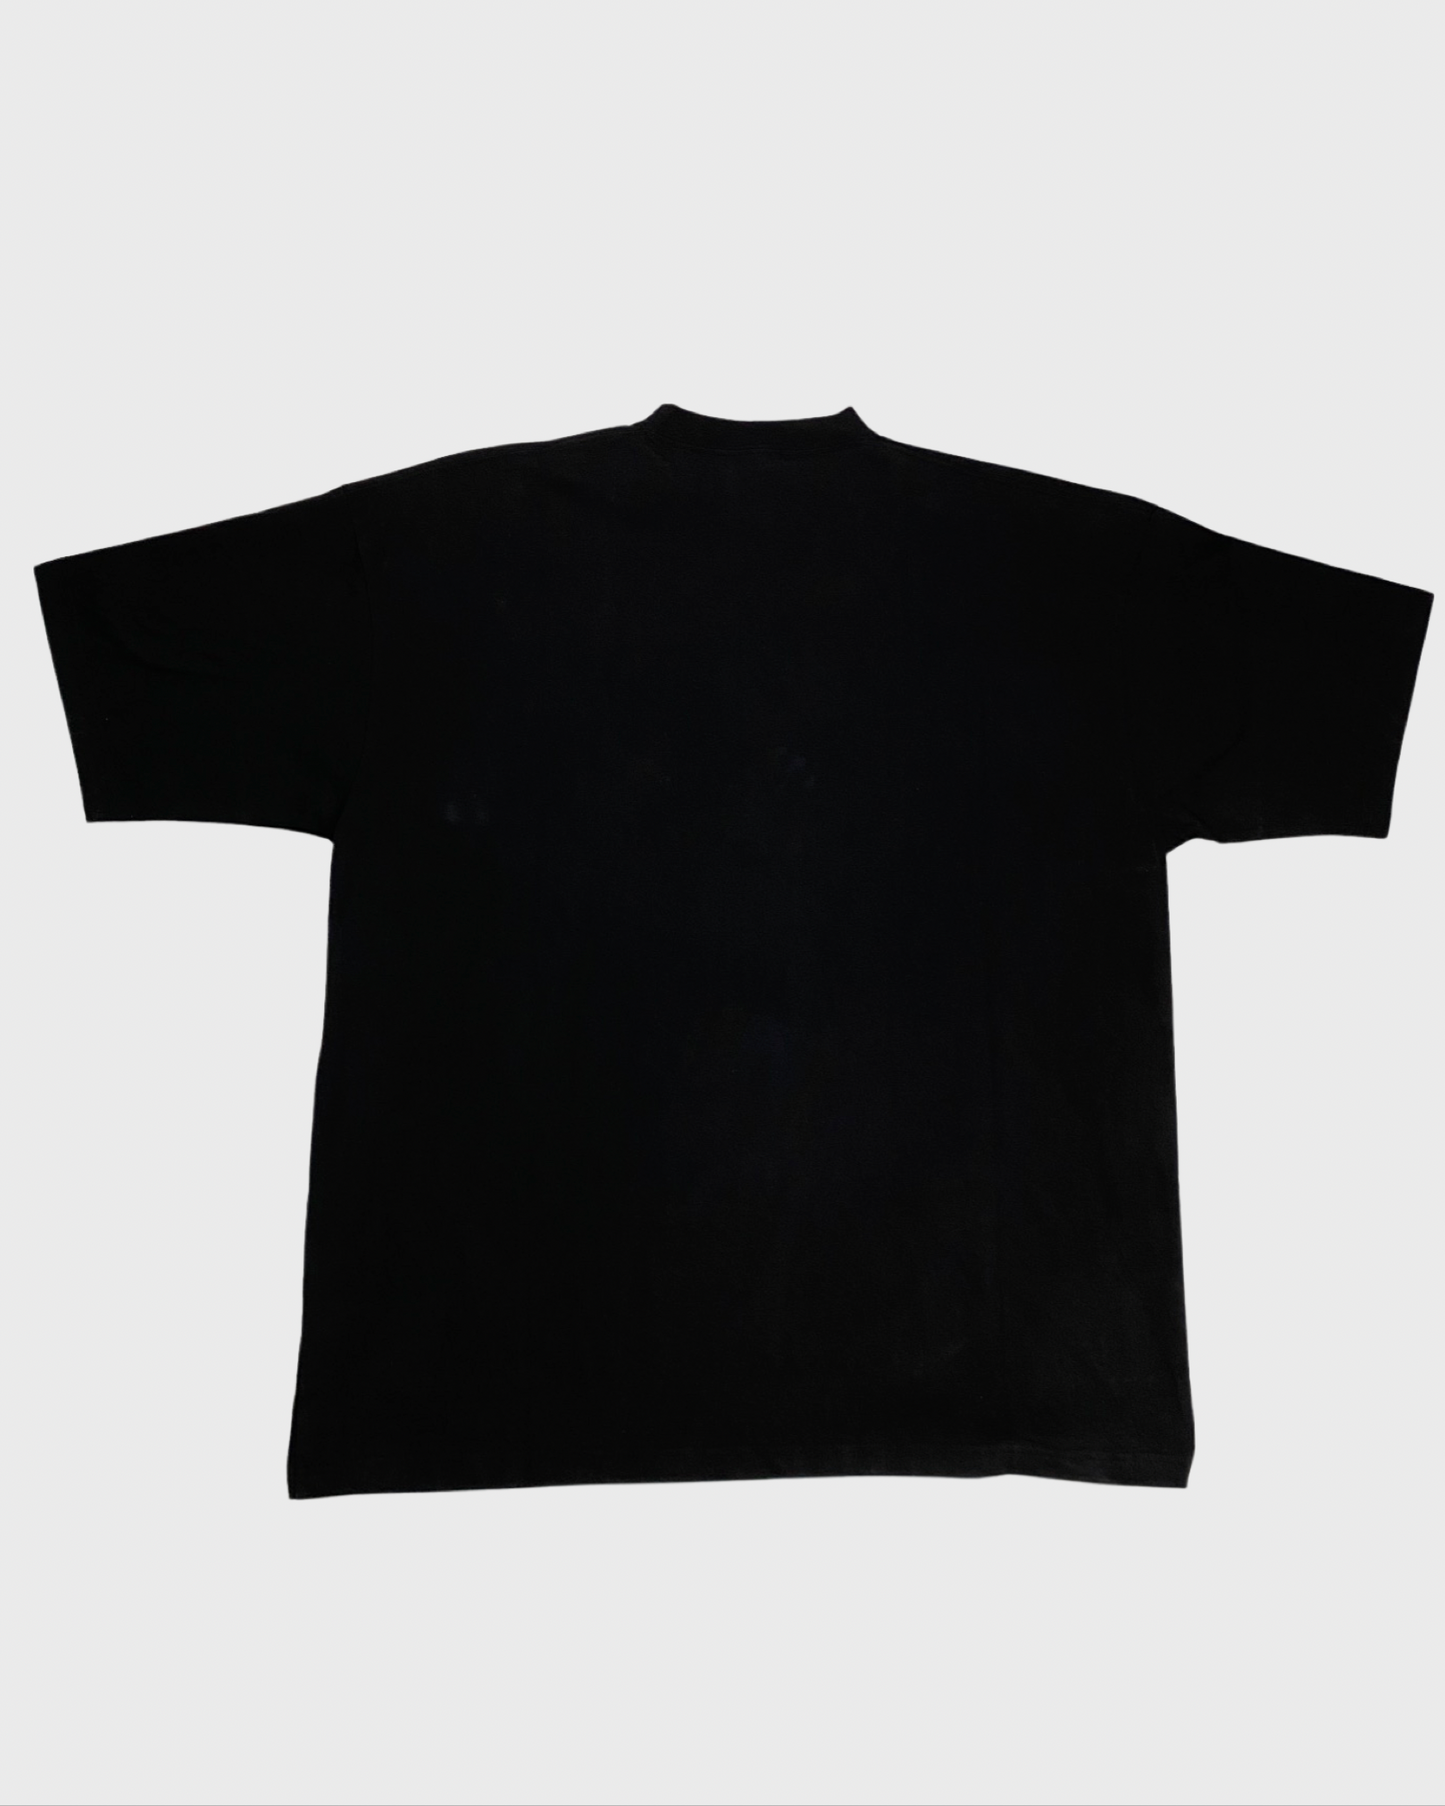 Balenciaga XL Sticker tshirt SZ:1